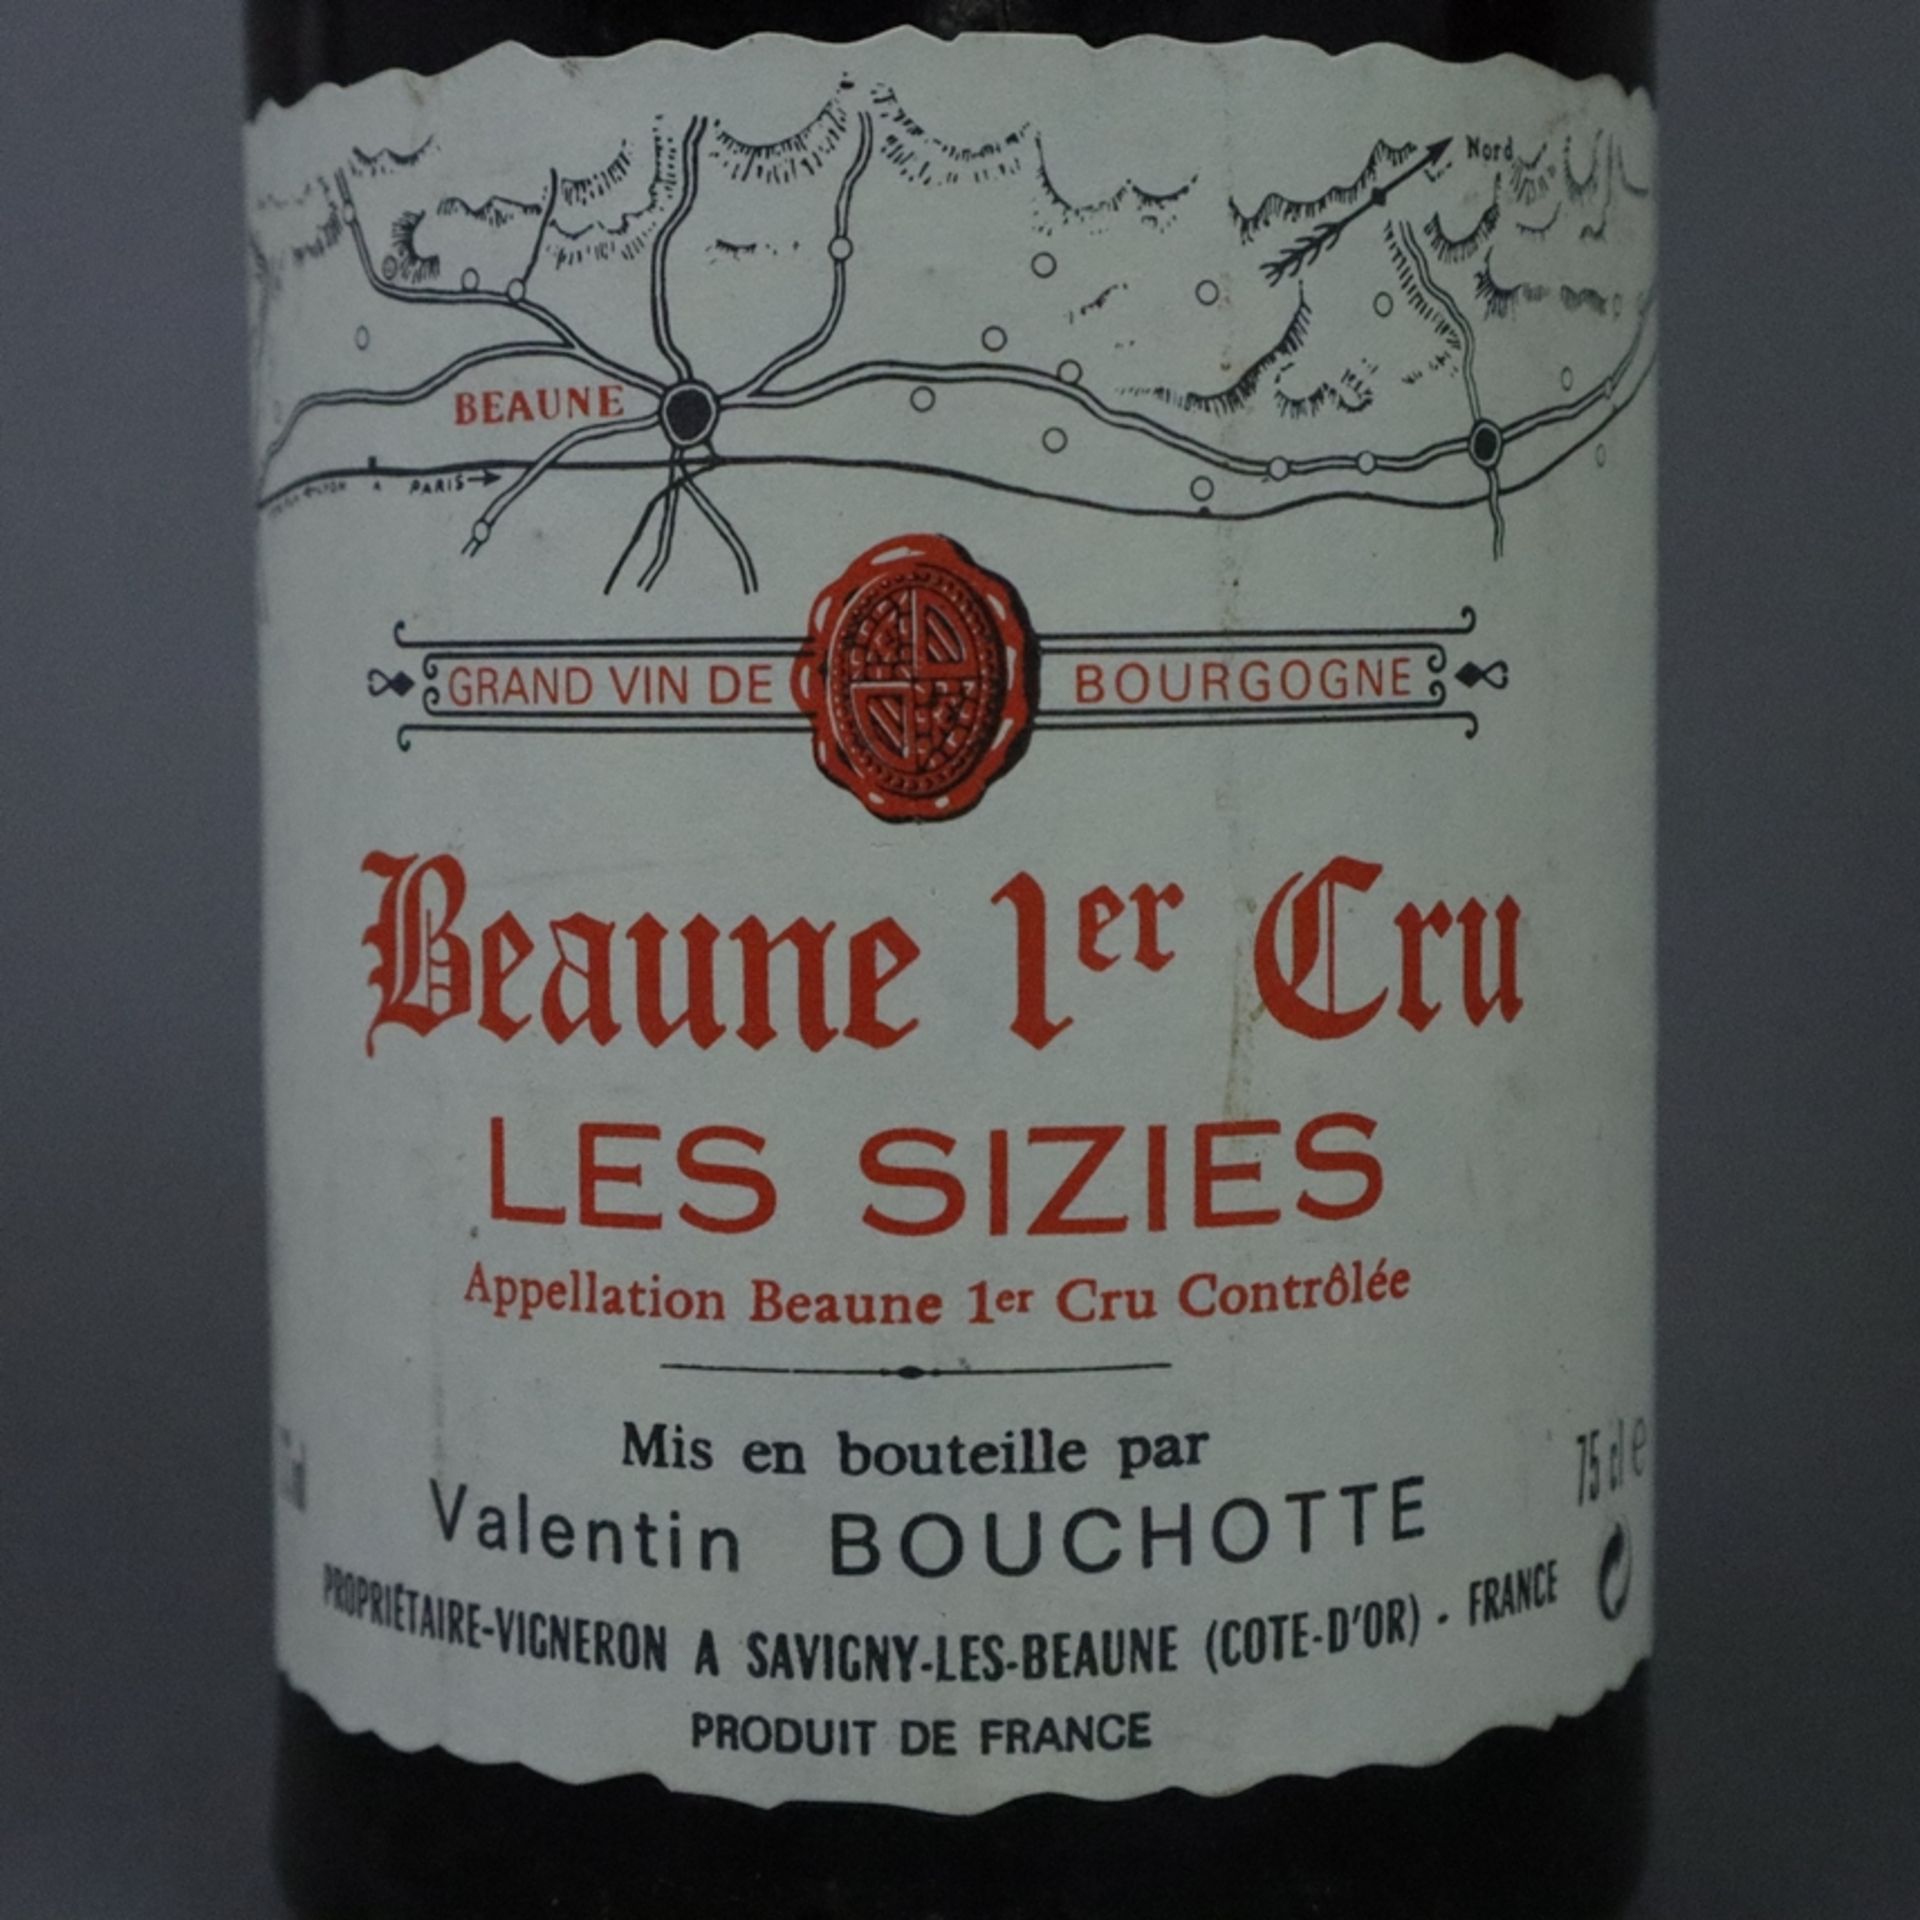 Weinkonvolut - 2 Flaschen 1978 + 2001, Domaine Valentin Bouchotte, Beaune 1er Cru, les Sizies, Fran - Bild 4 aus 7